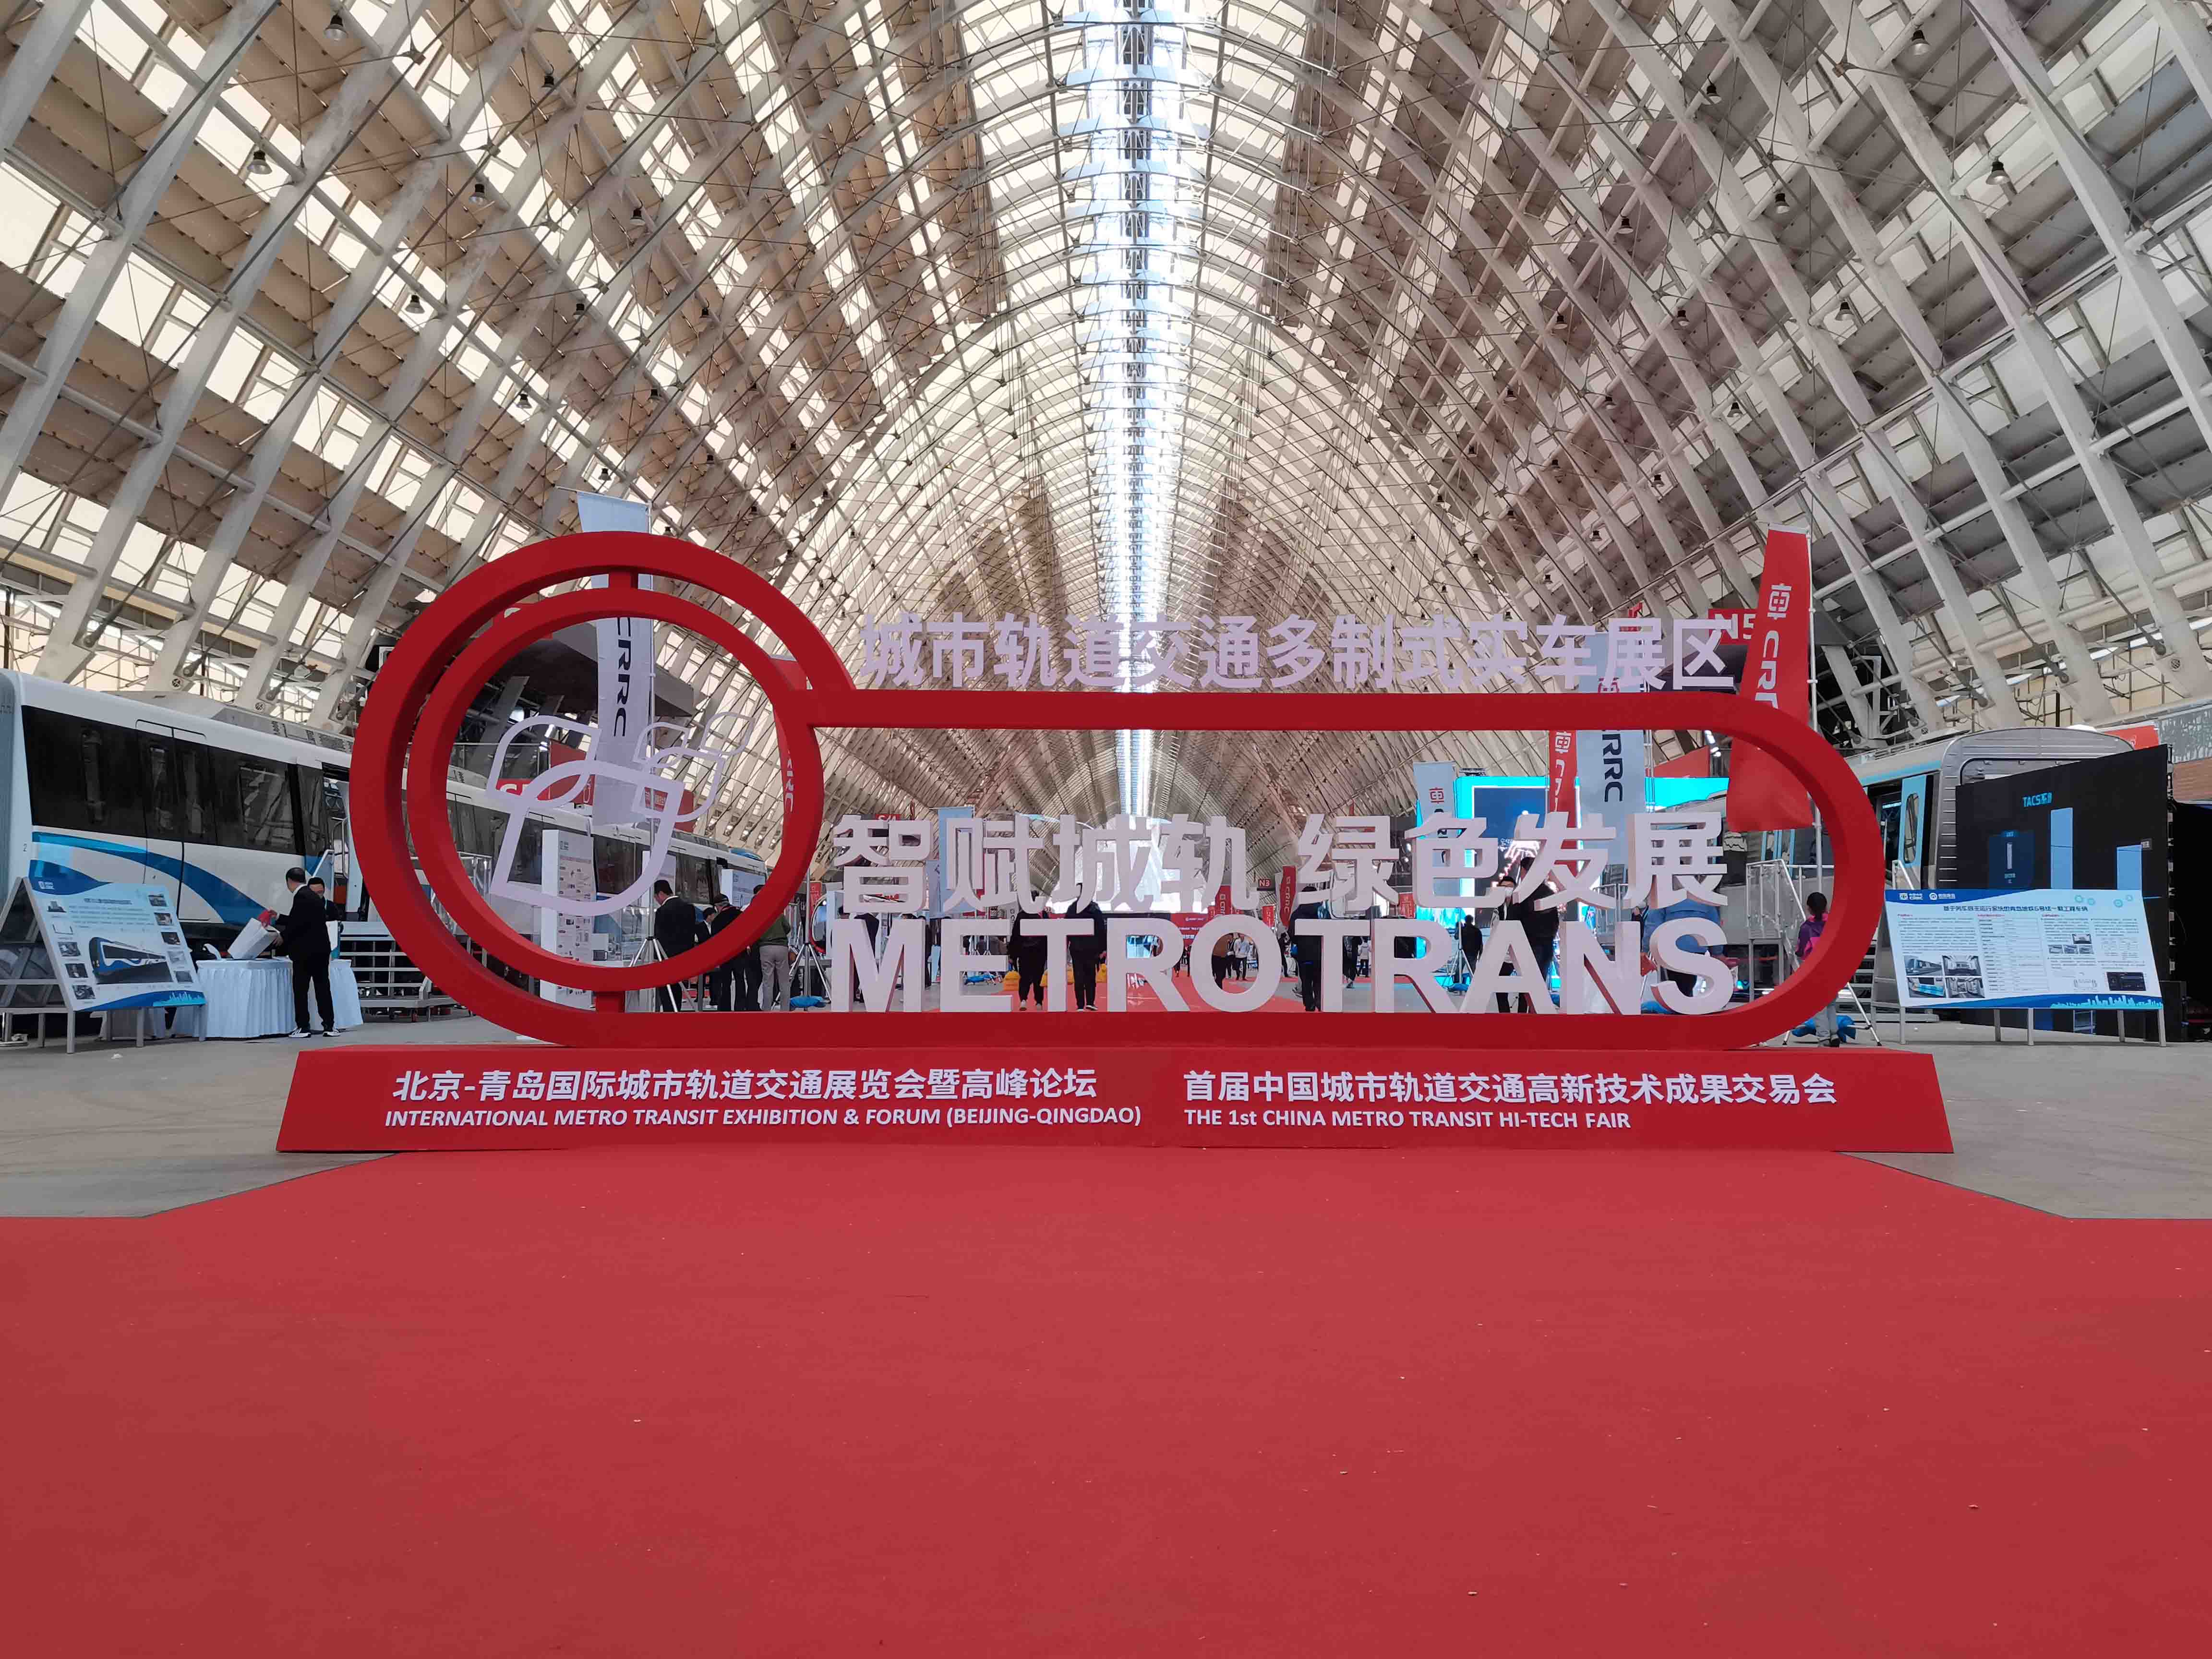 北京-青岛国际城市轨道交通展览会暨高峰论坛于2023年4月27日-29日在青岛举办。